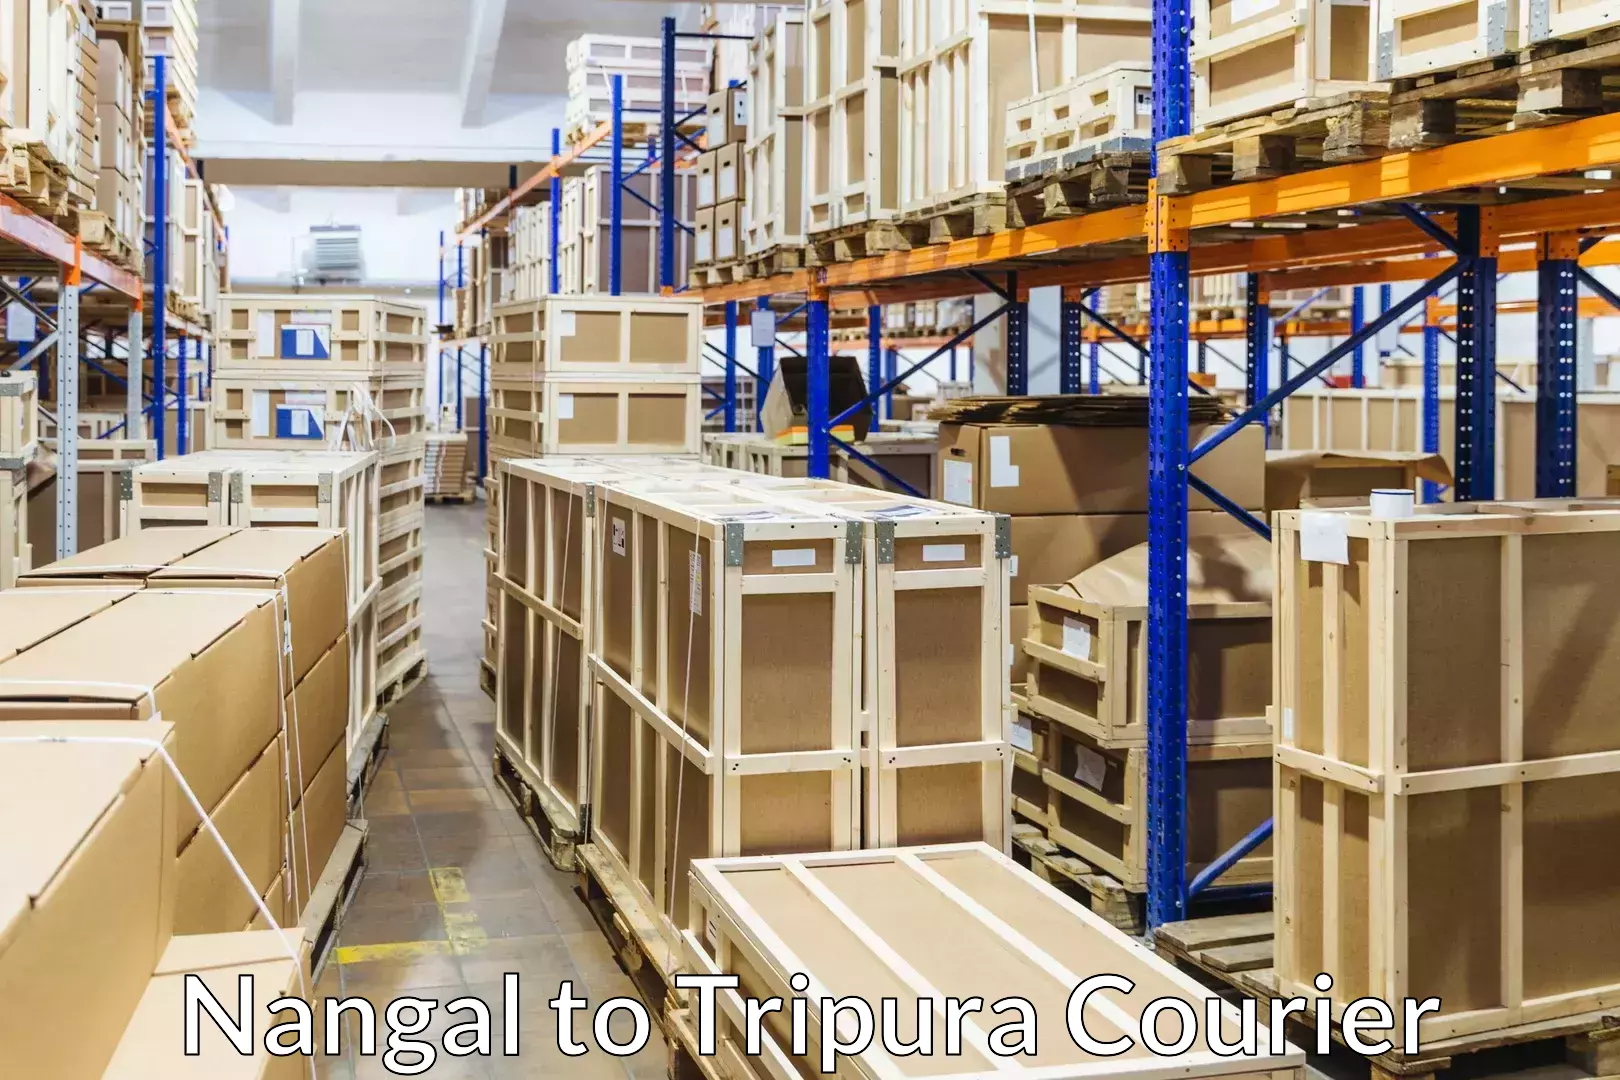 Furniture transport company Nangal to Aambasa